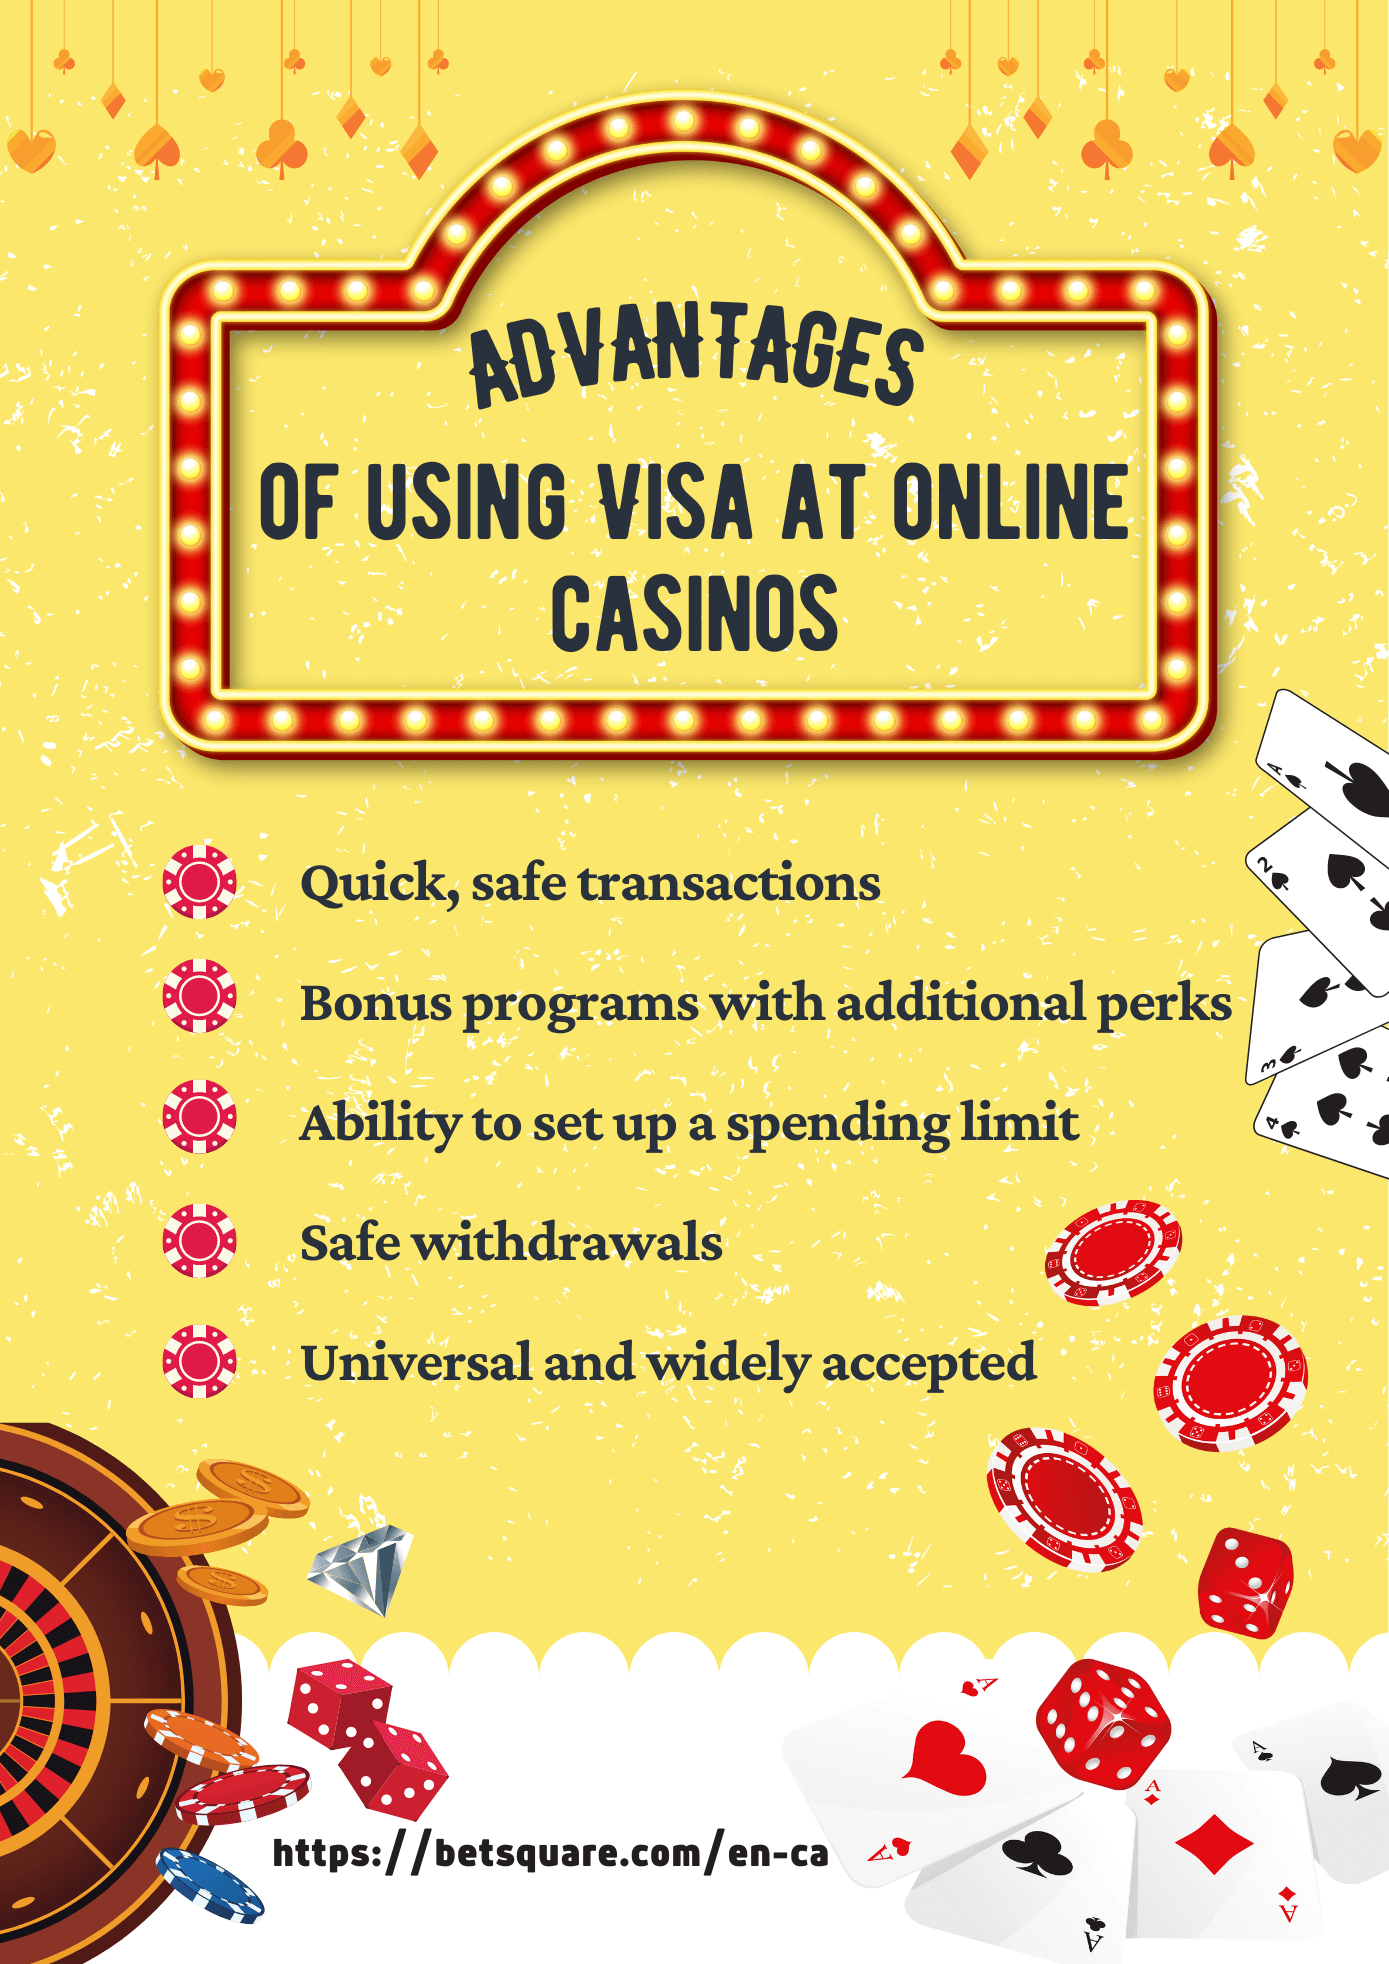 Betsquare Visa Casinos Infographic